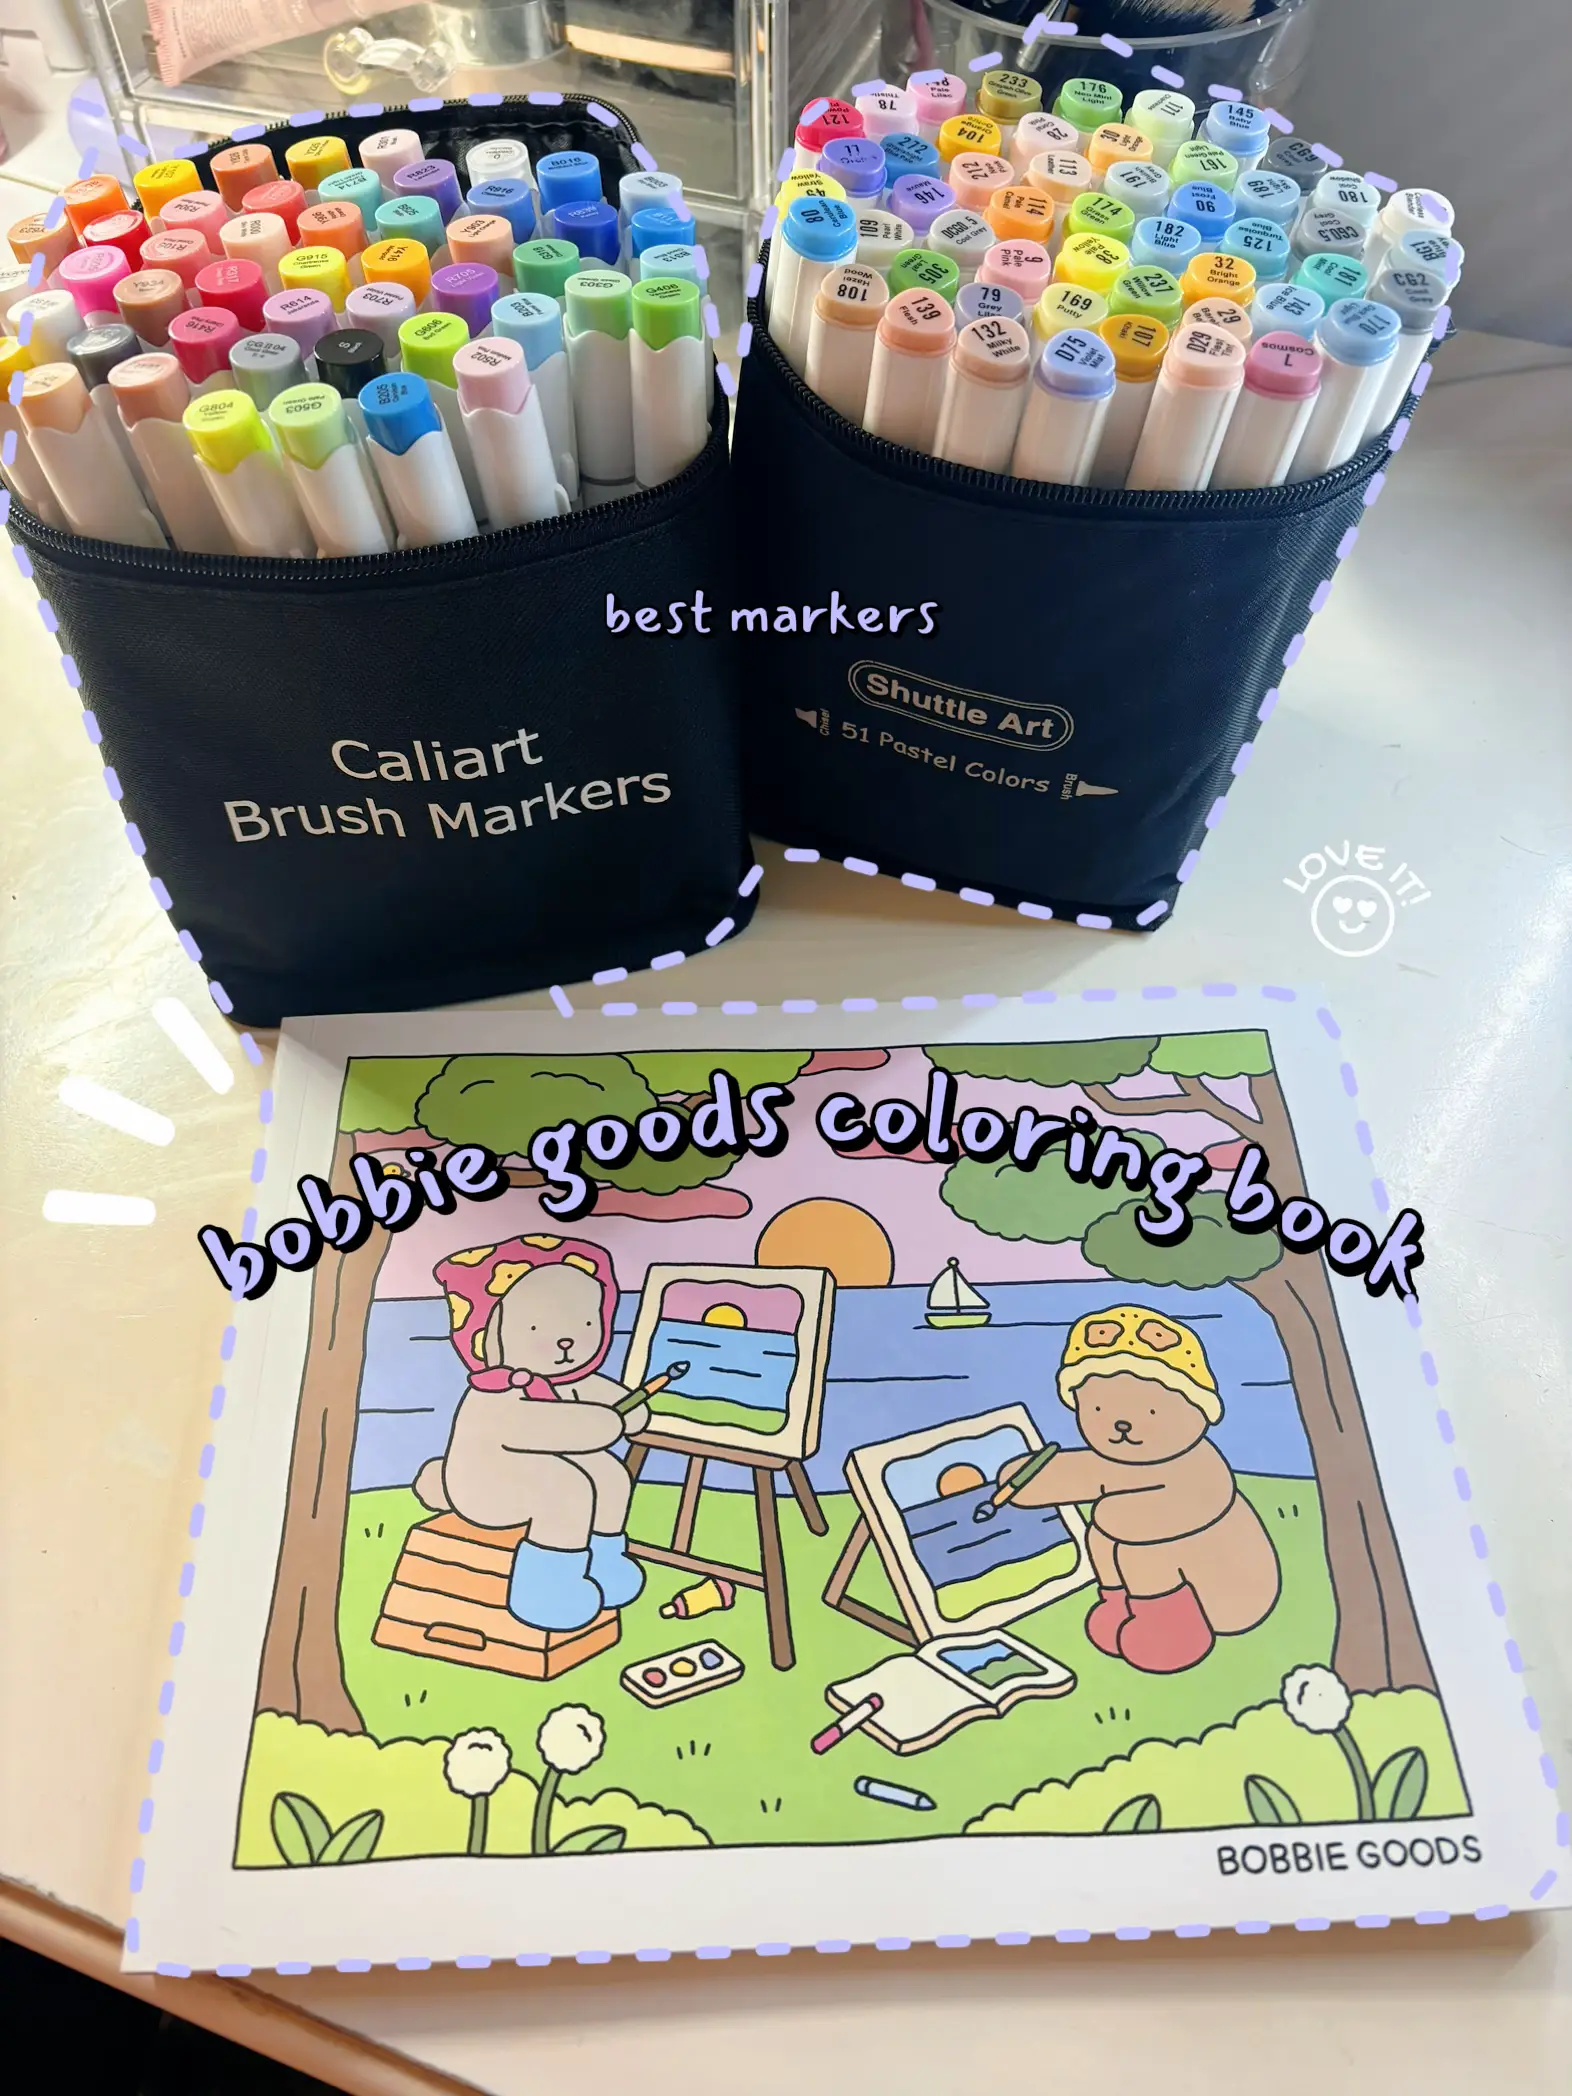 POV: You got your hands on the Bobbie Goods Coloring Book 🥰💖 #bobbie, bobbie  goods